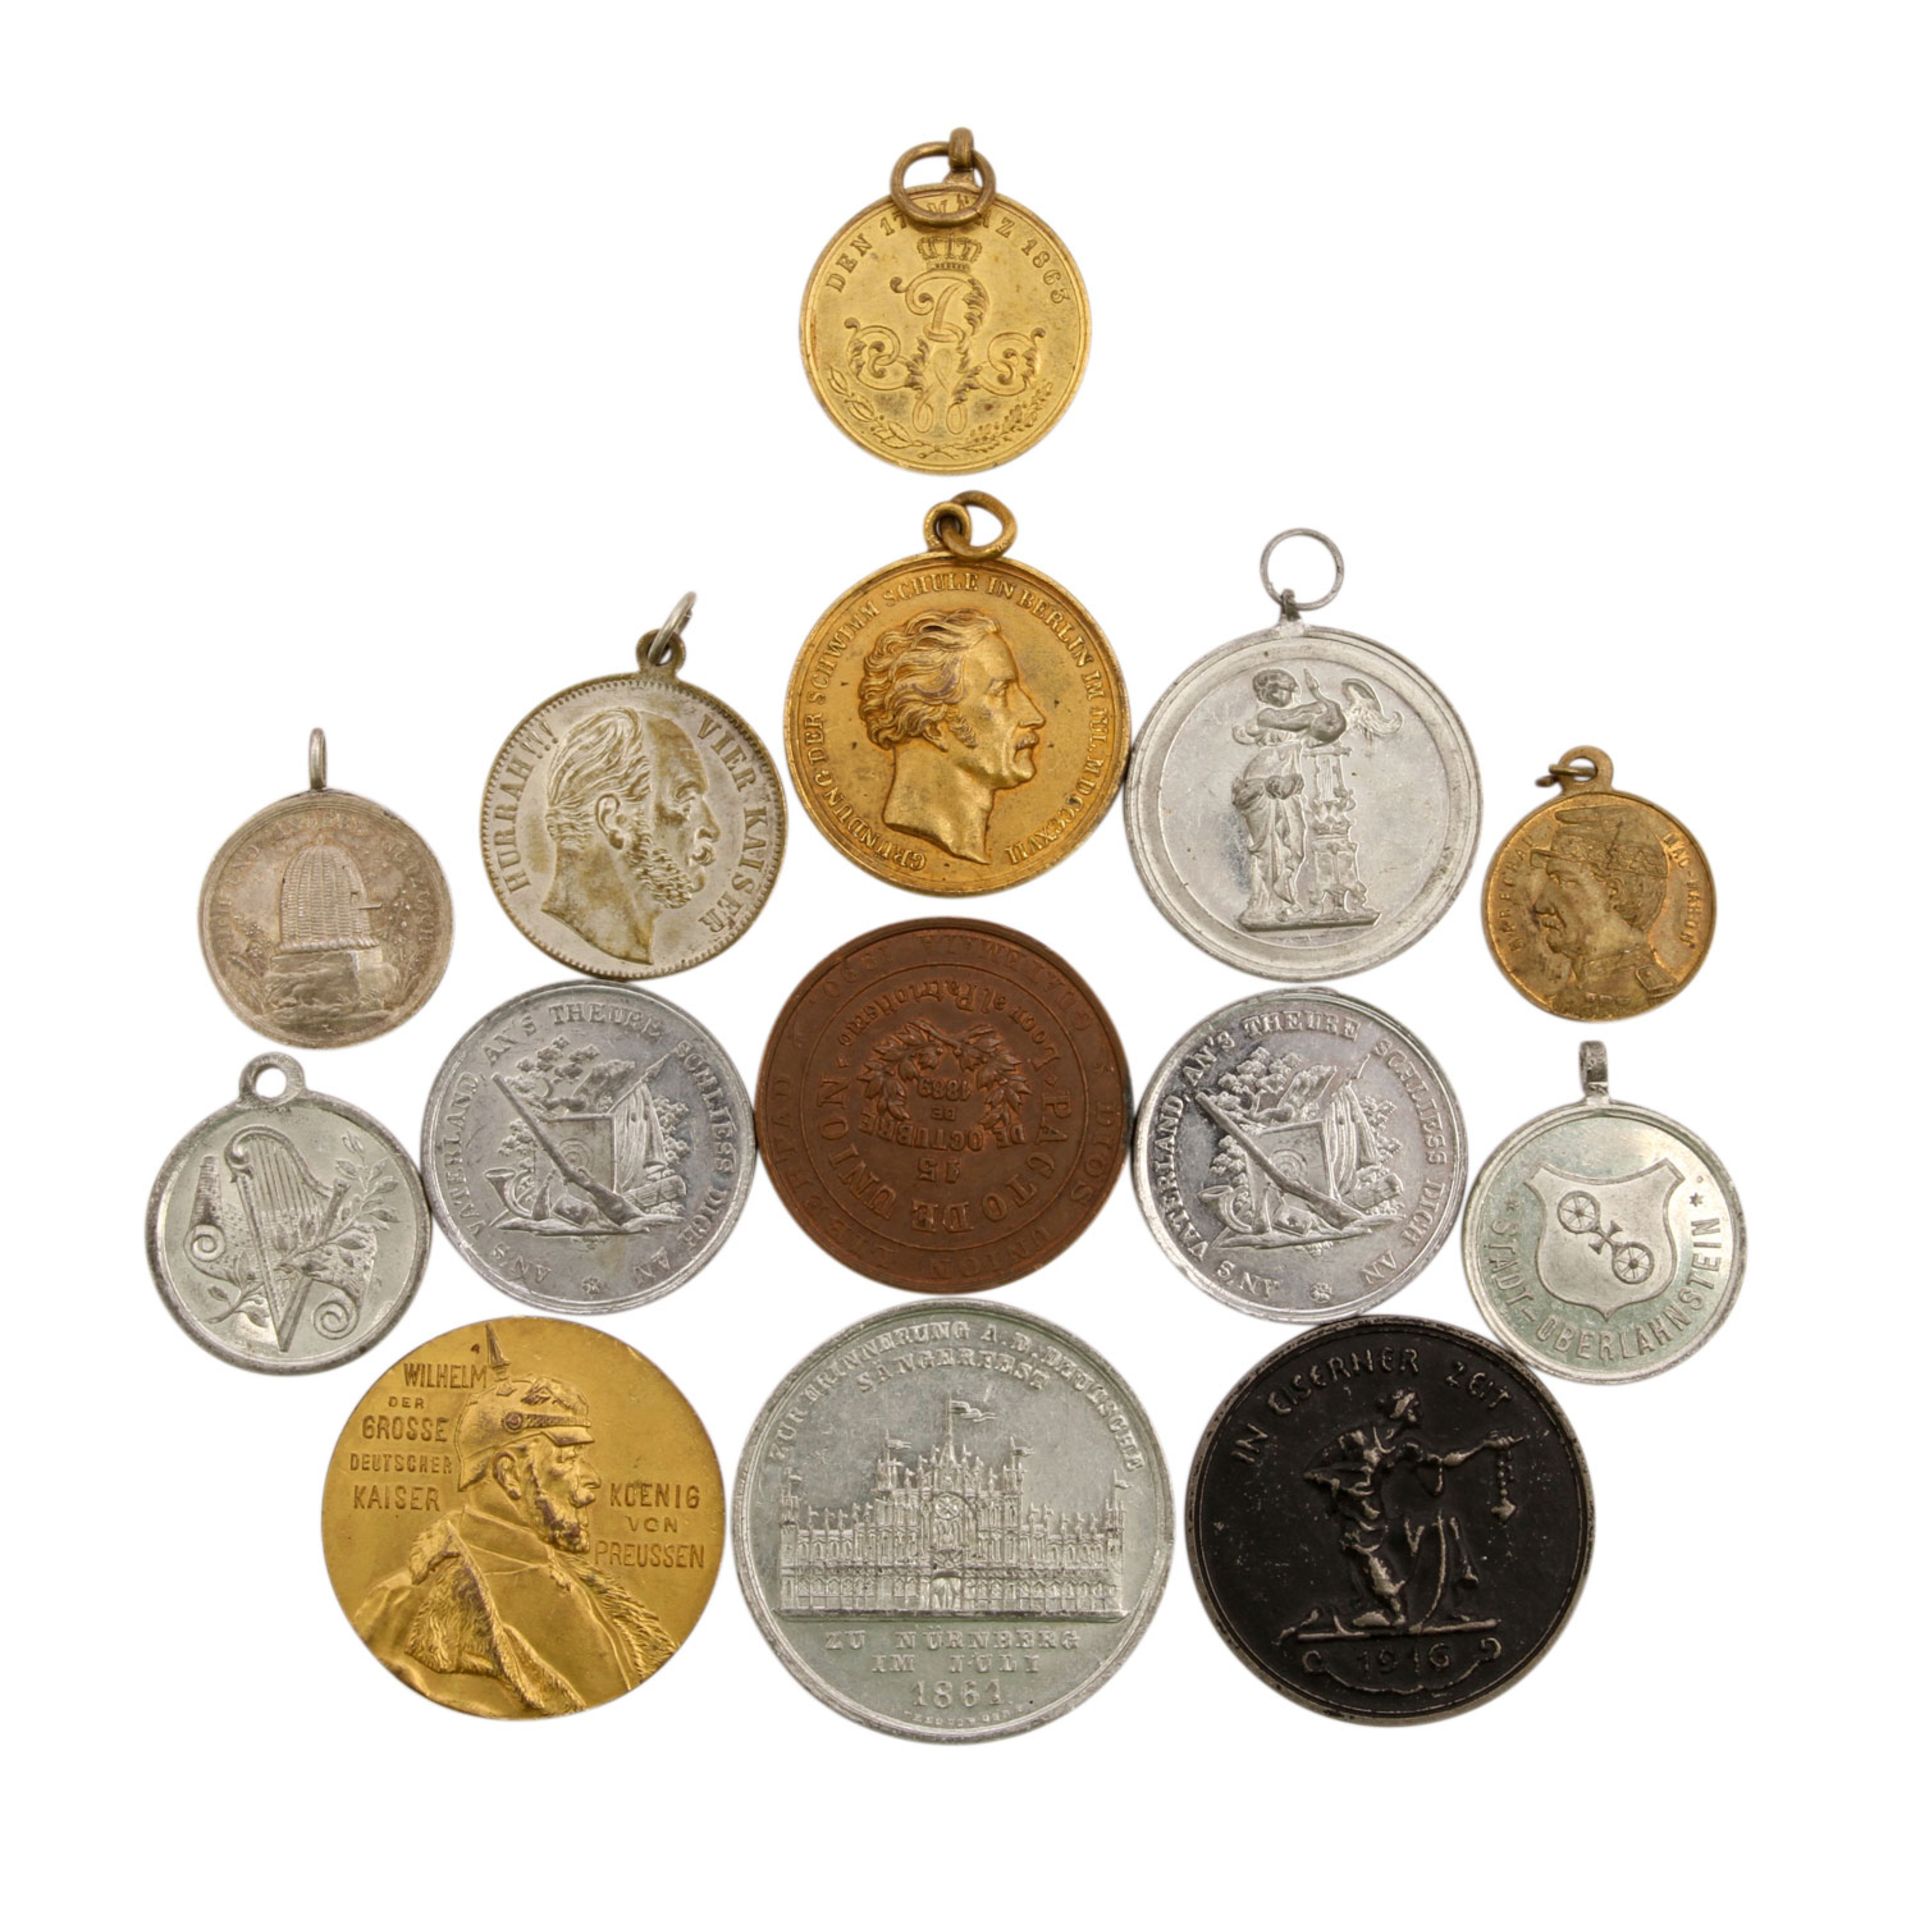 Historische Medaillen, mitunter Schützenmedaillen,Schulmedaillen, u.a. Medaille v. Brandt auf die